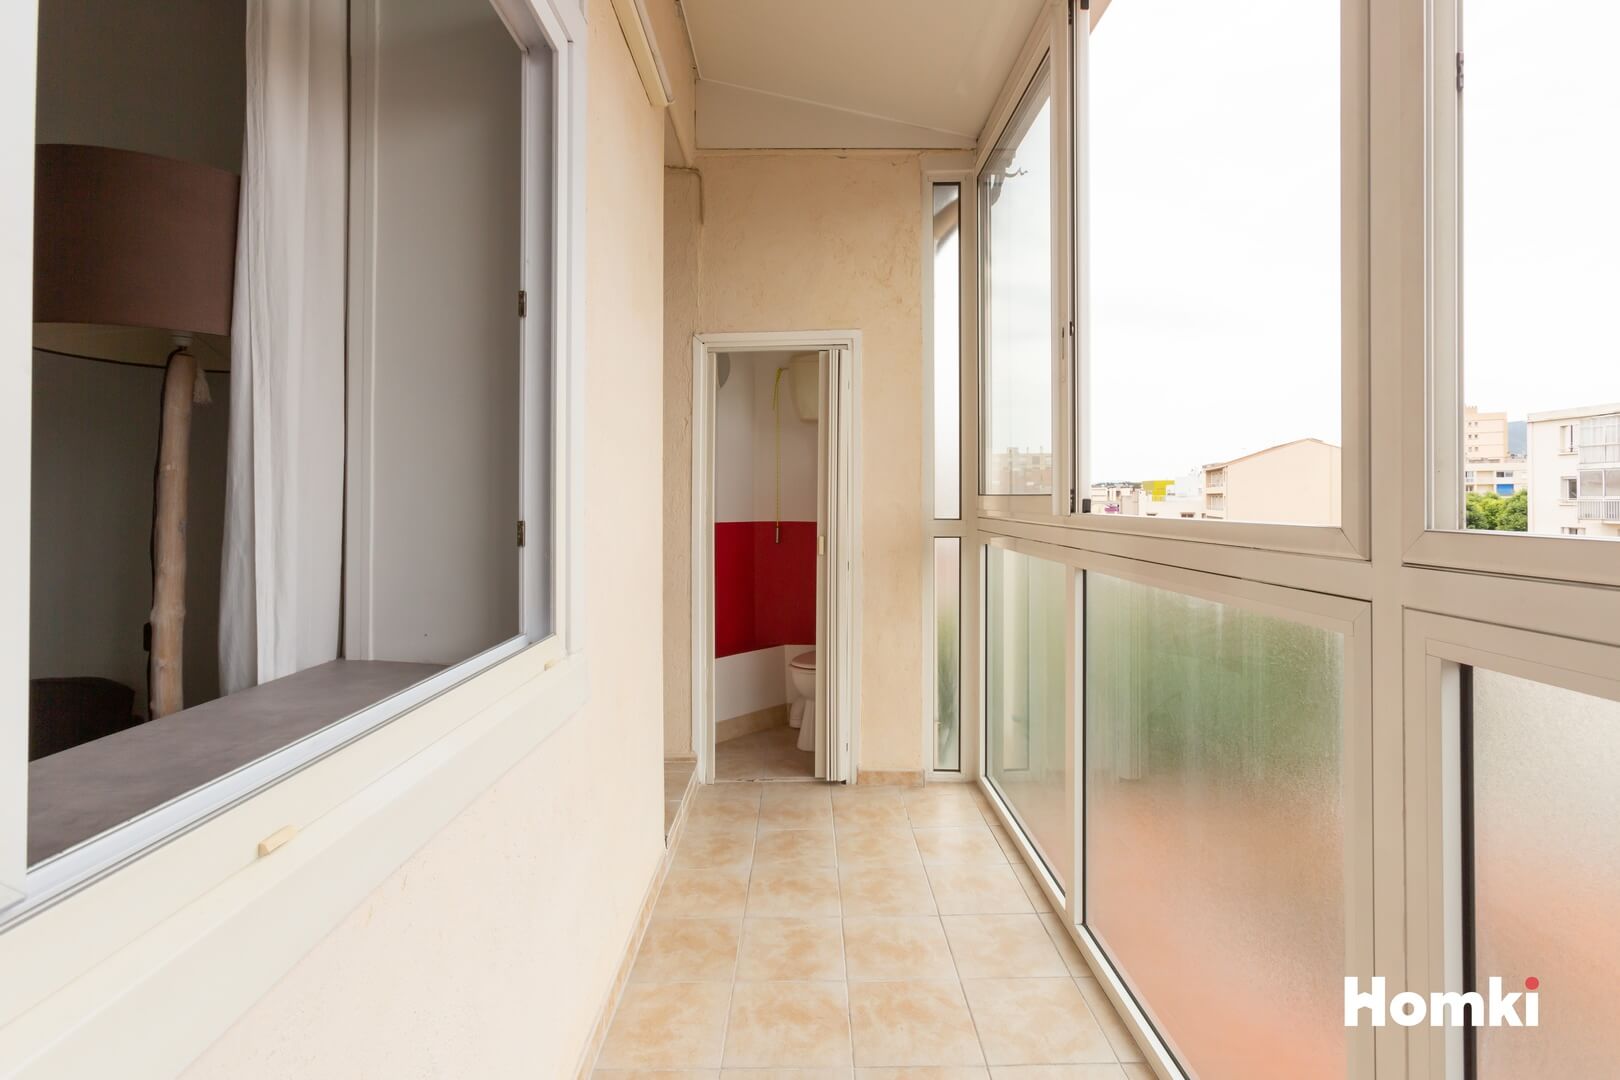 Homki - Vente Appartement  de 49.0 m² à Marseille 13005